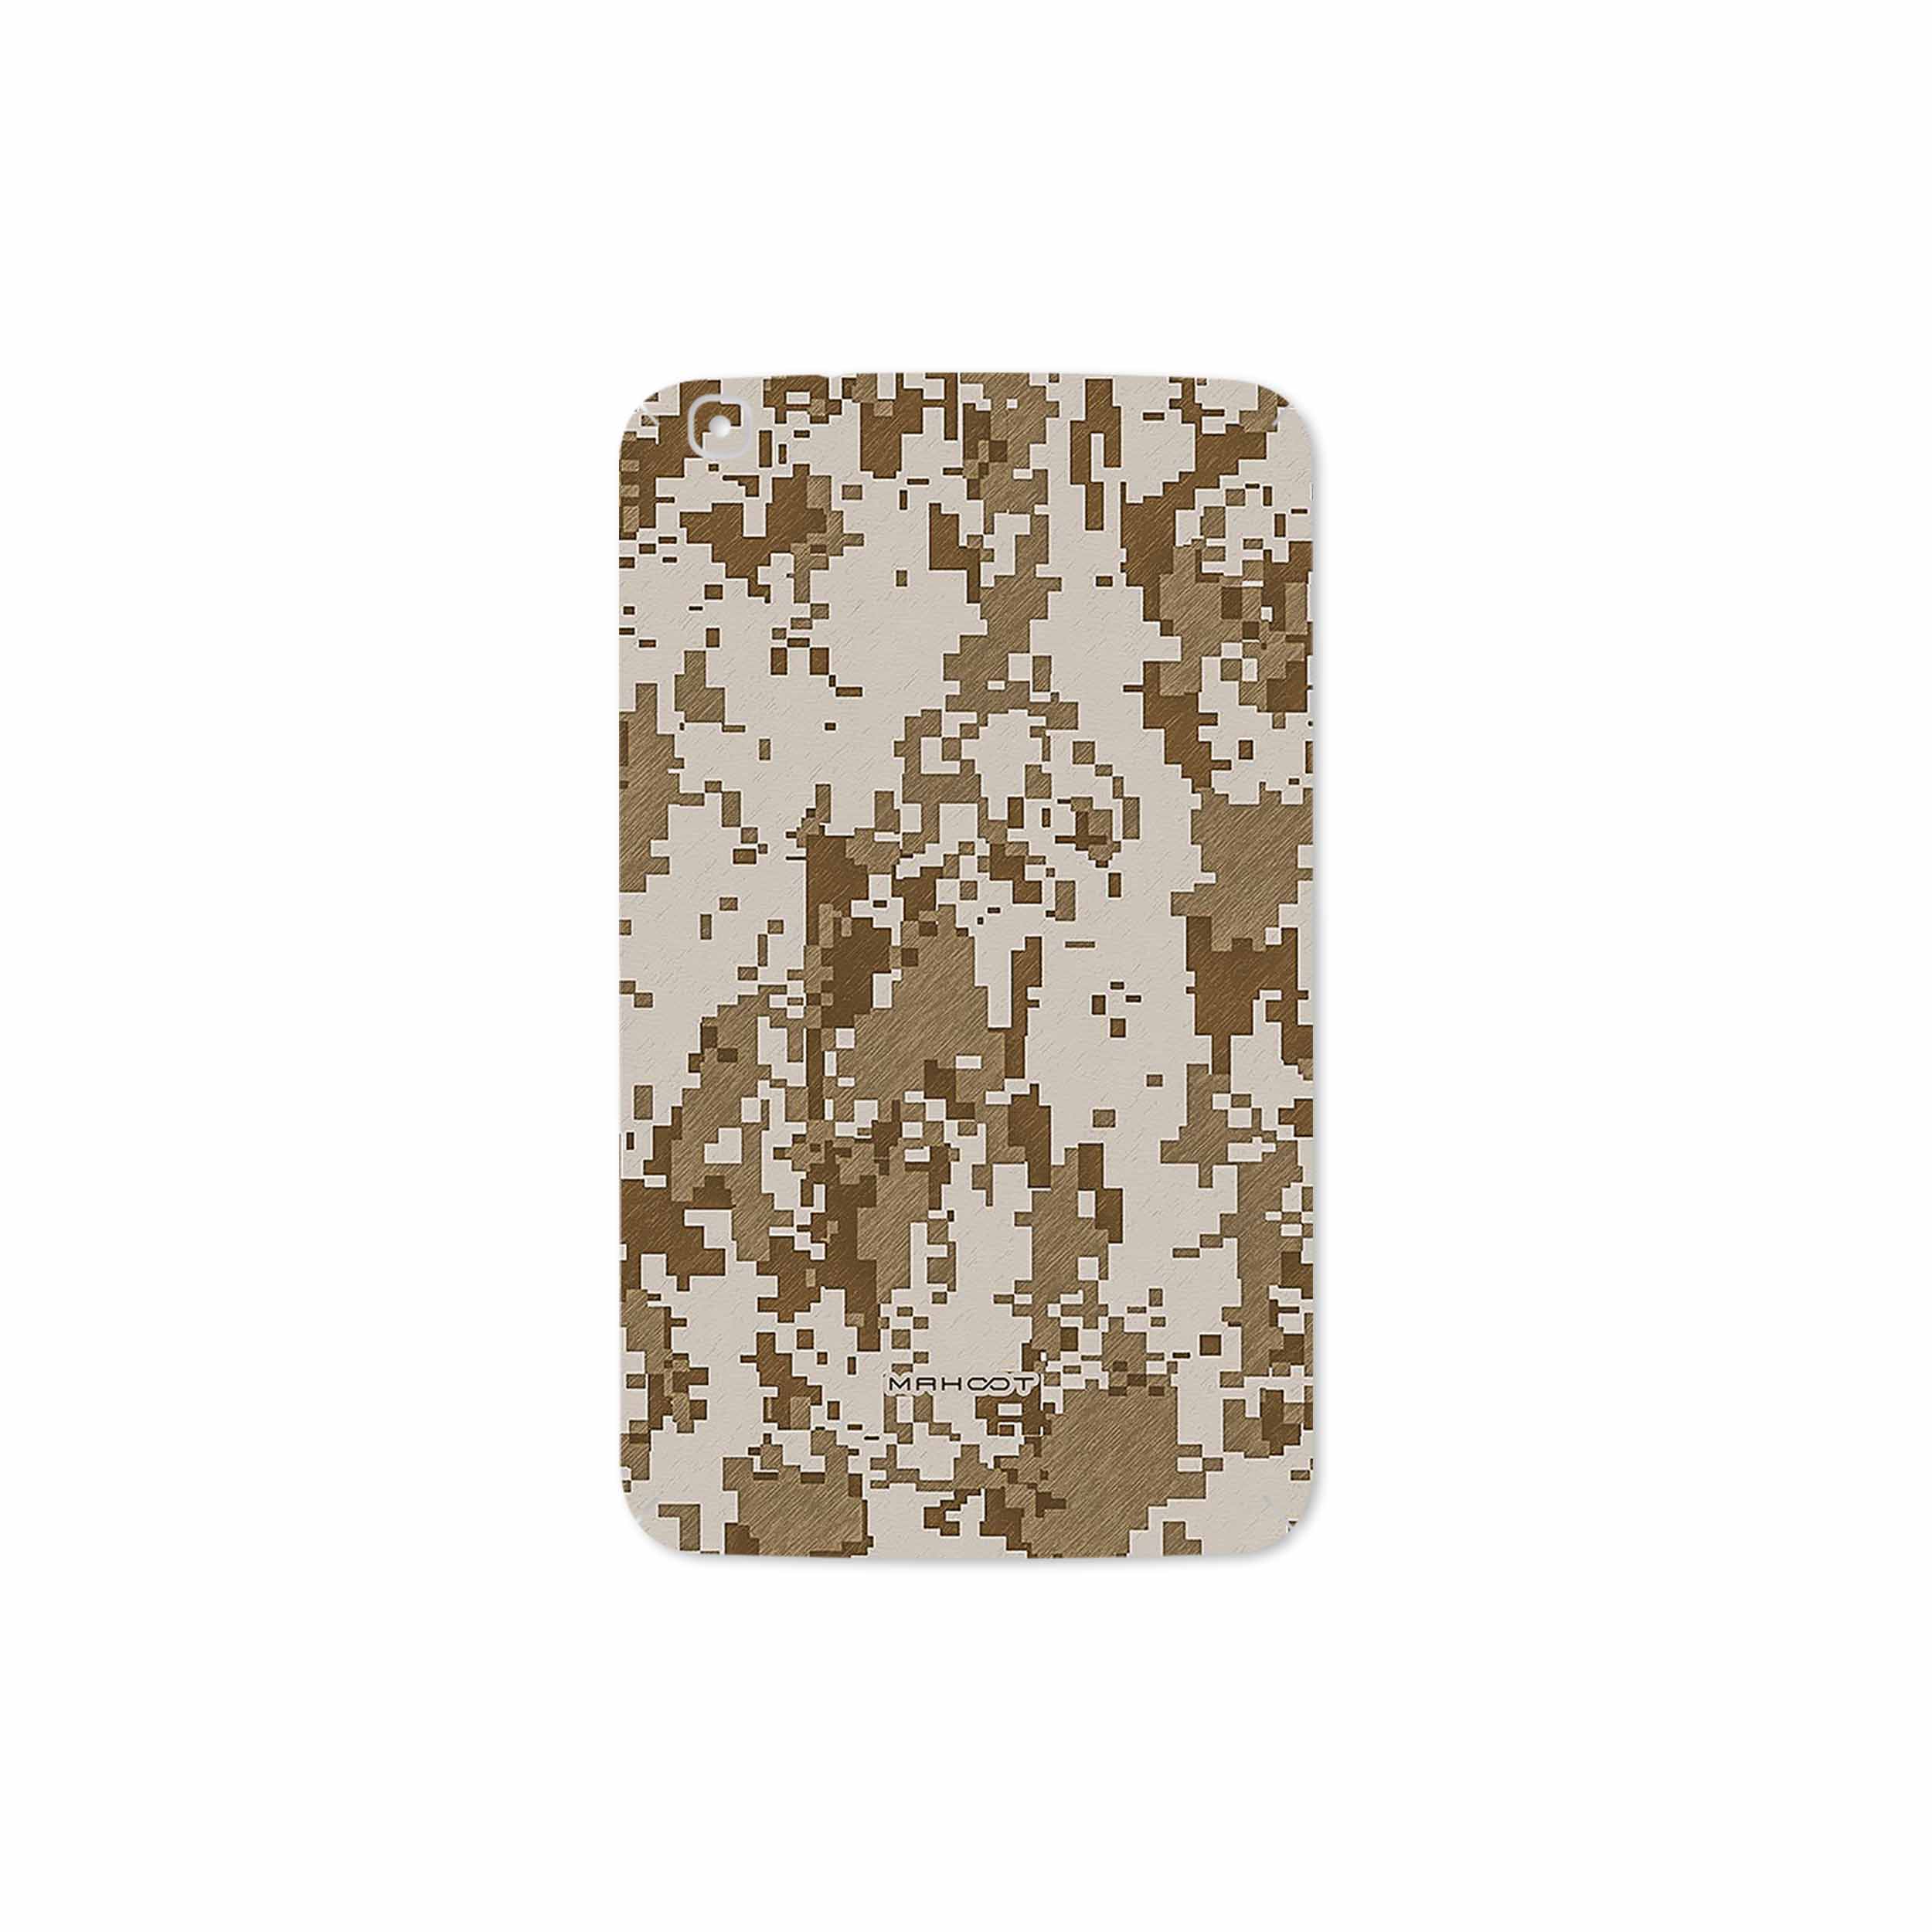 برچسب پوششی ماهوت مدل Army-Desert-Pixel مناسب برای تبلت سامسونگ Galaxy Tab 3 8.0 2013 T315